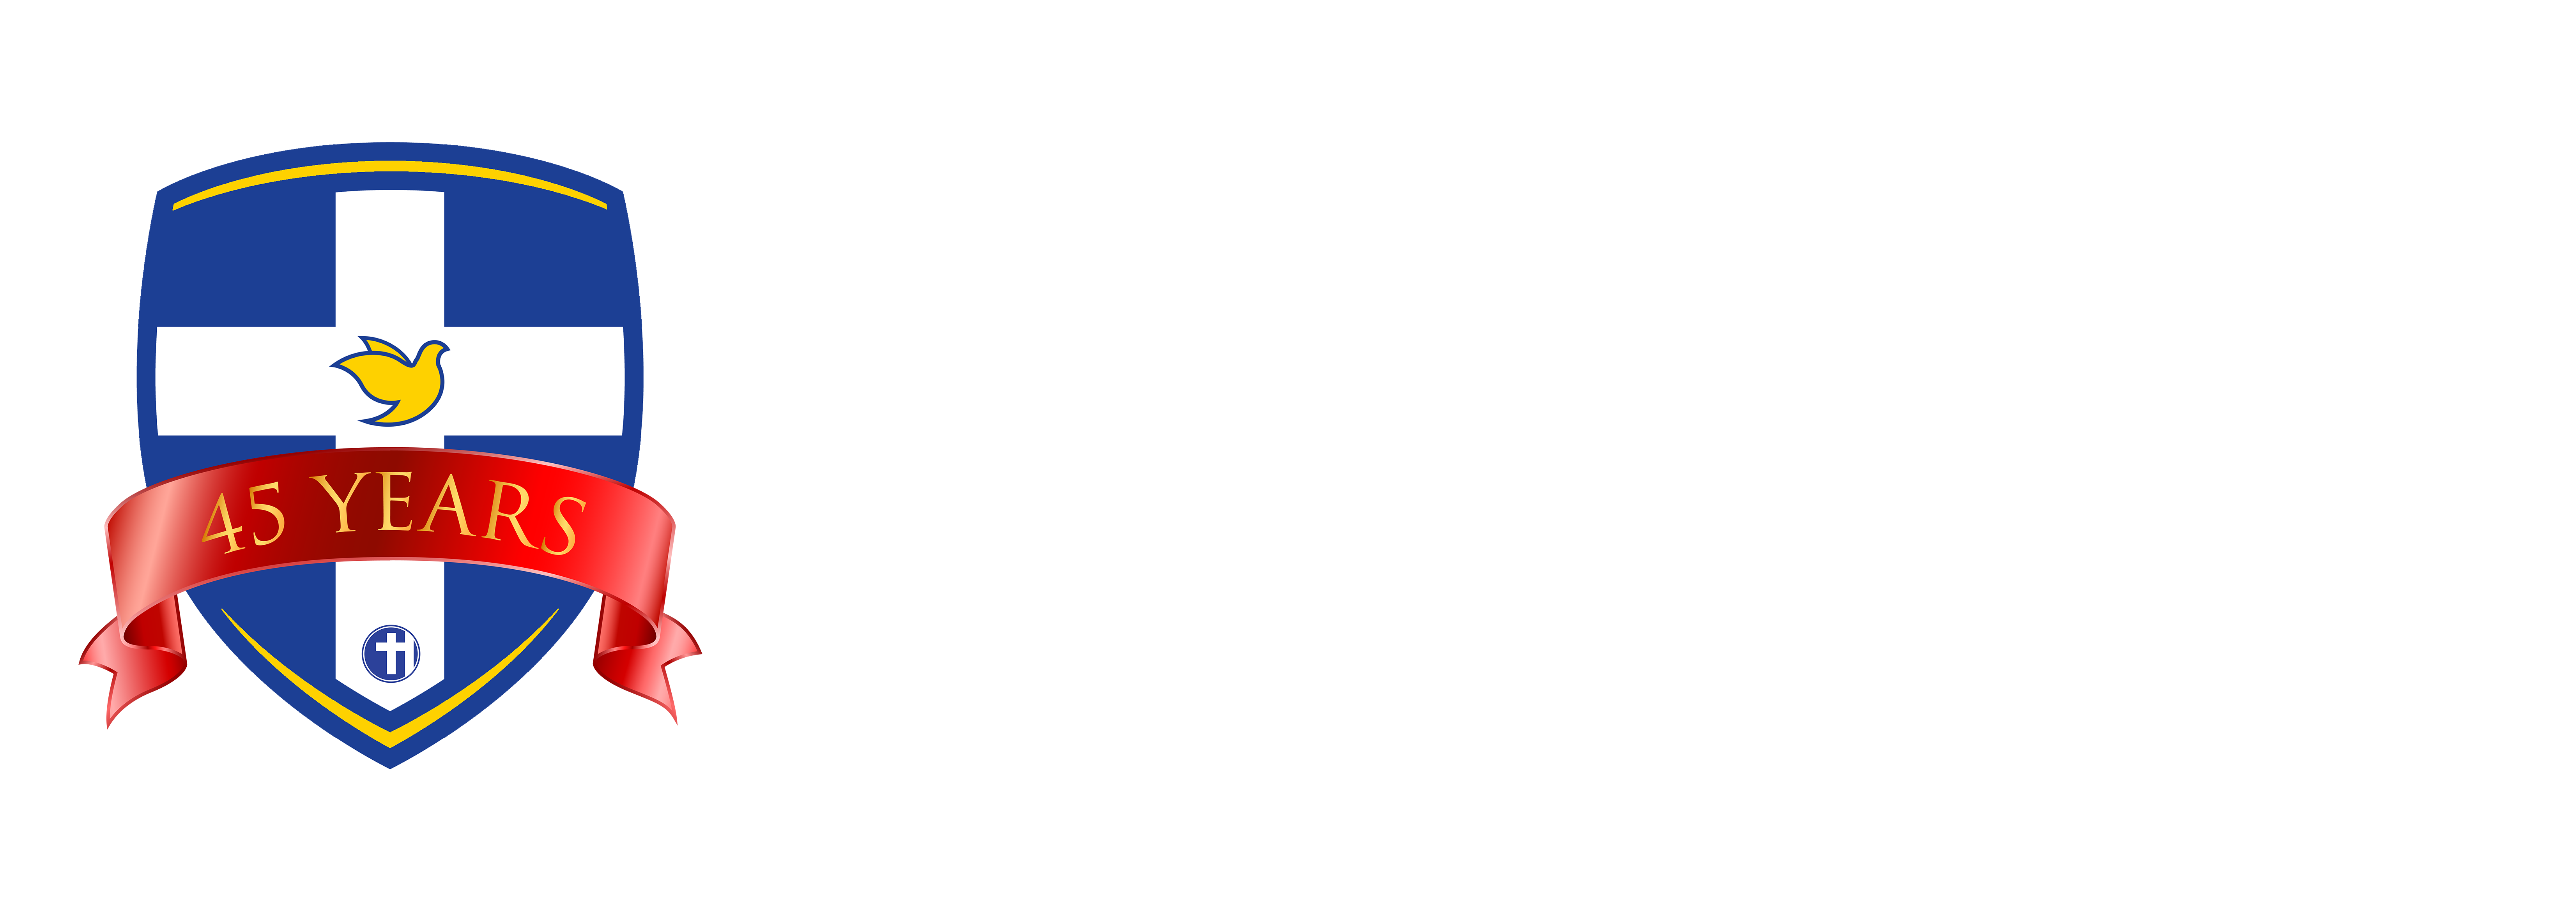 HillSide Christian College